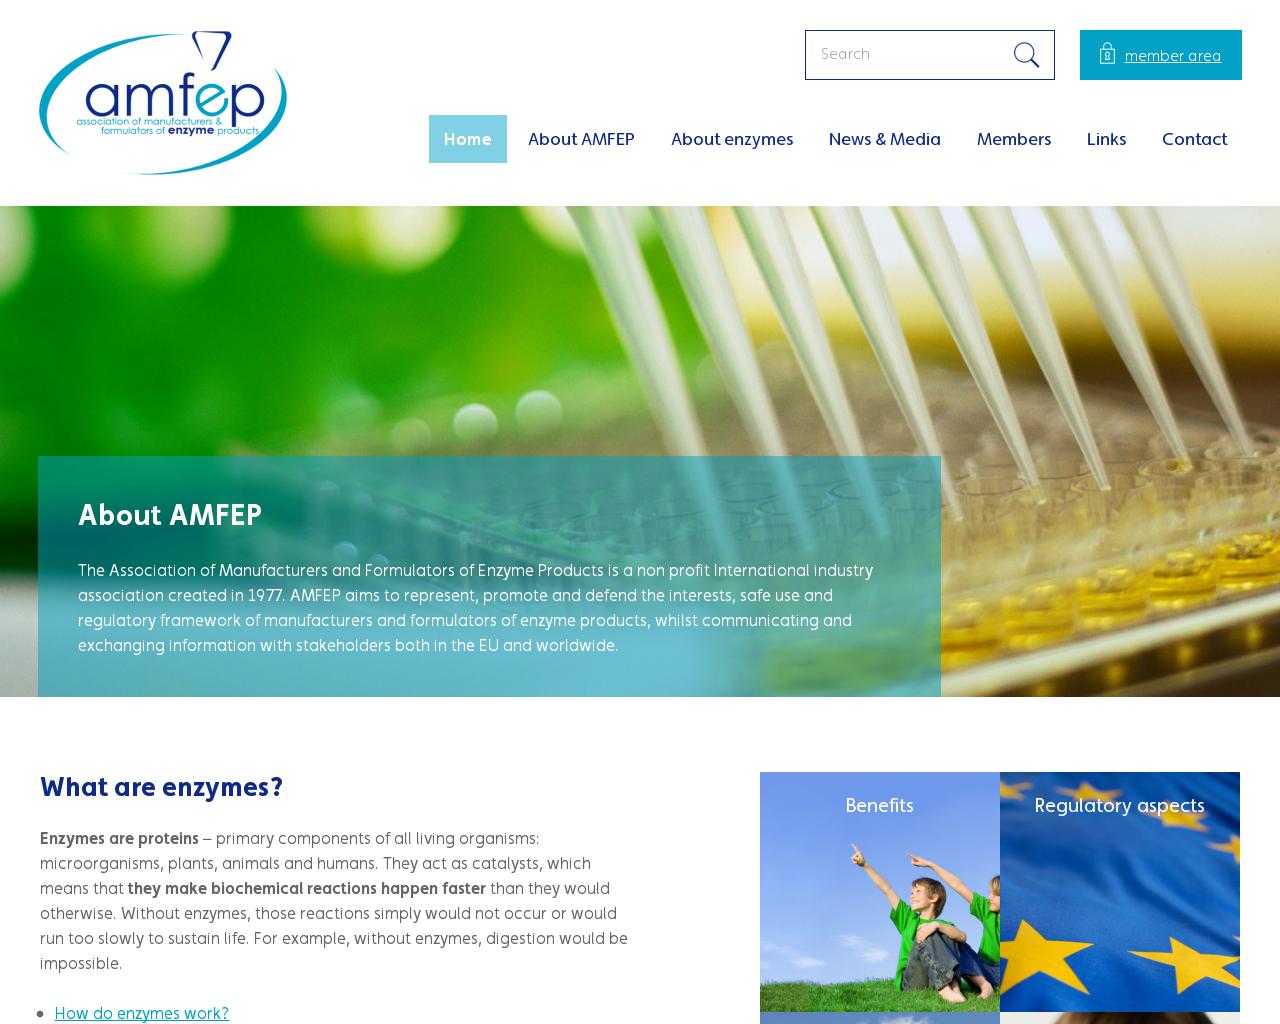 amfep.org